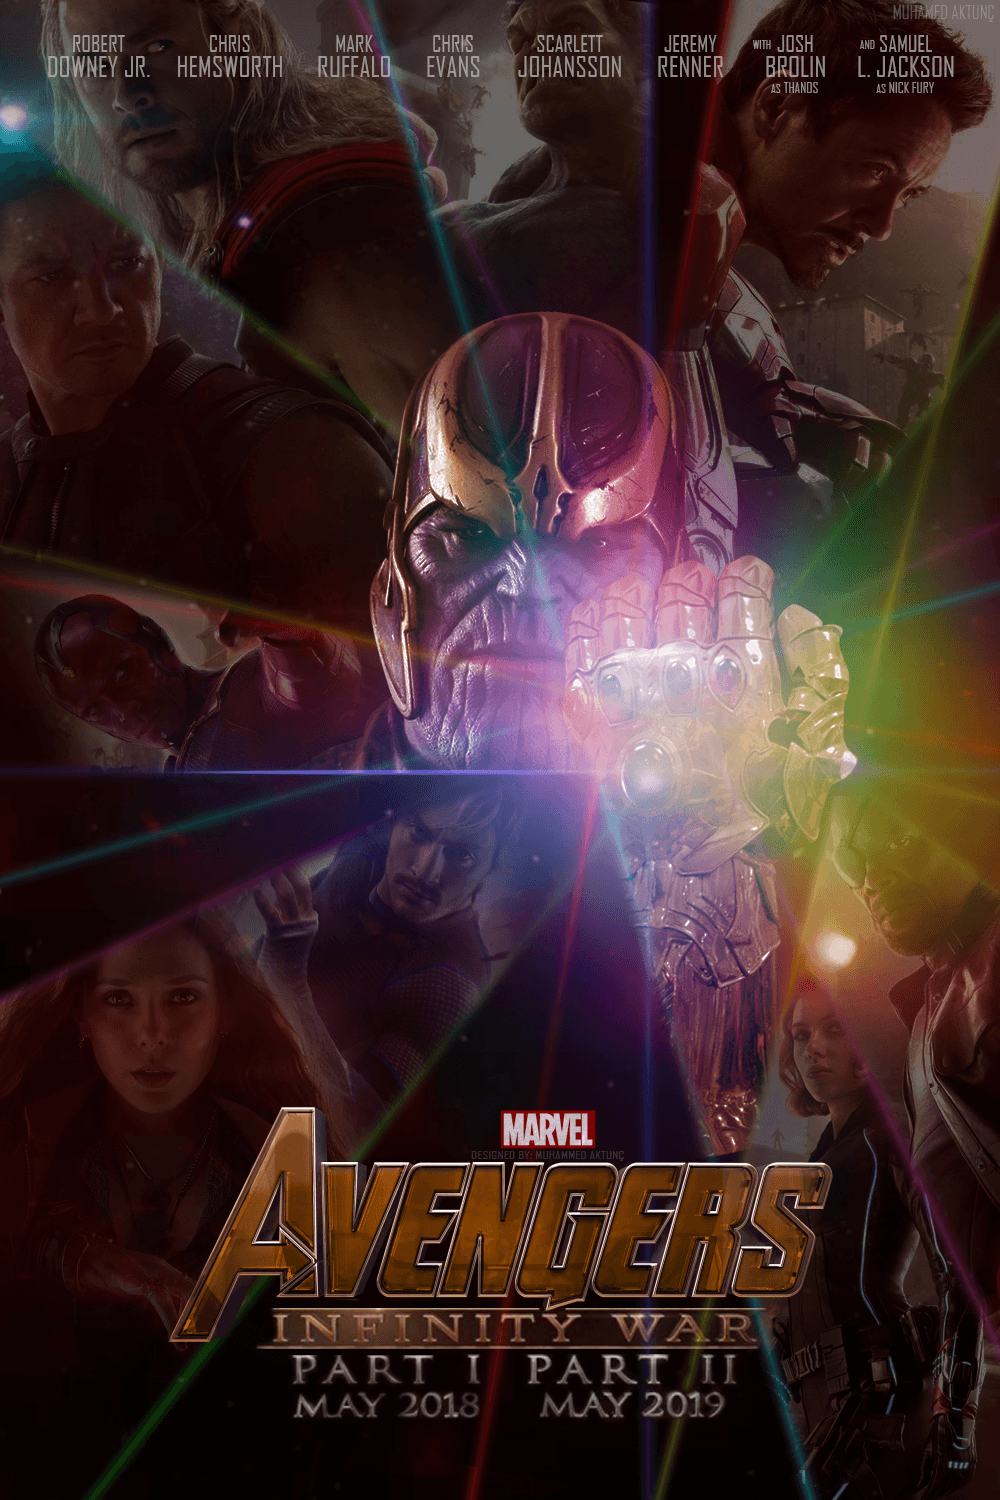 Image: Avengers Infinity War